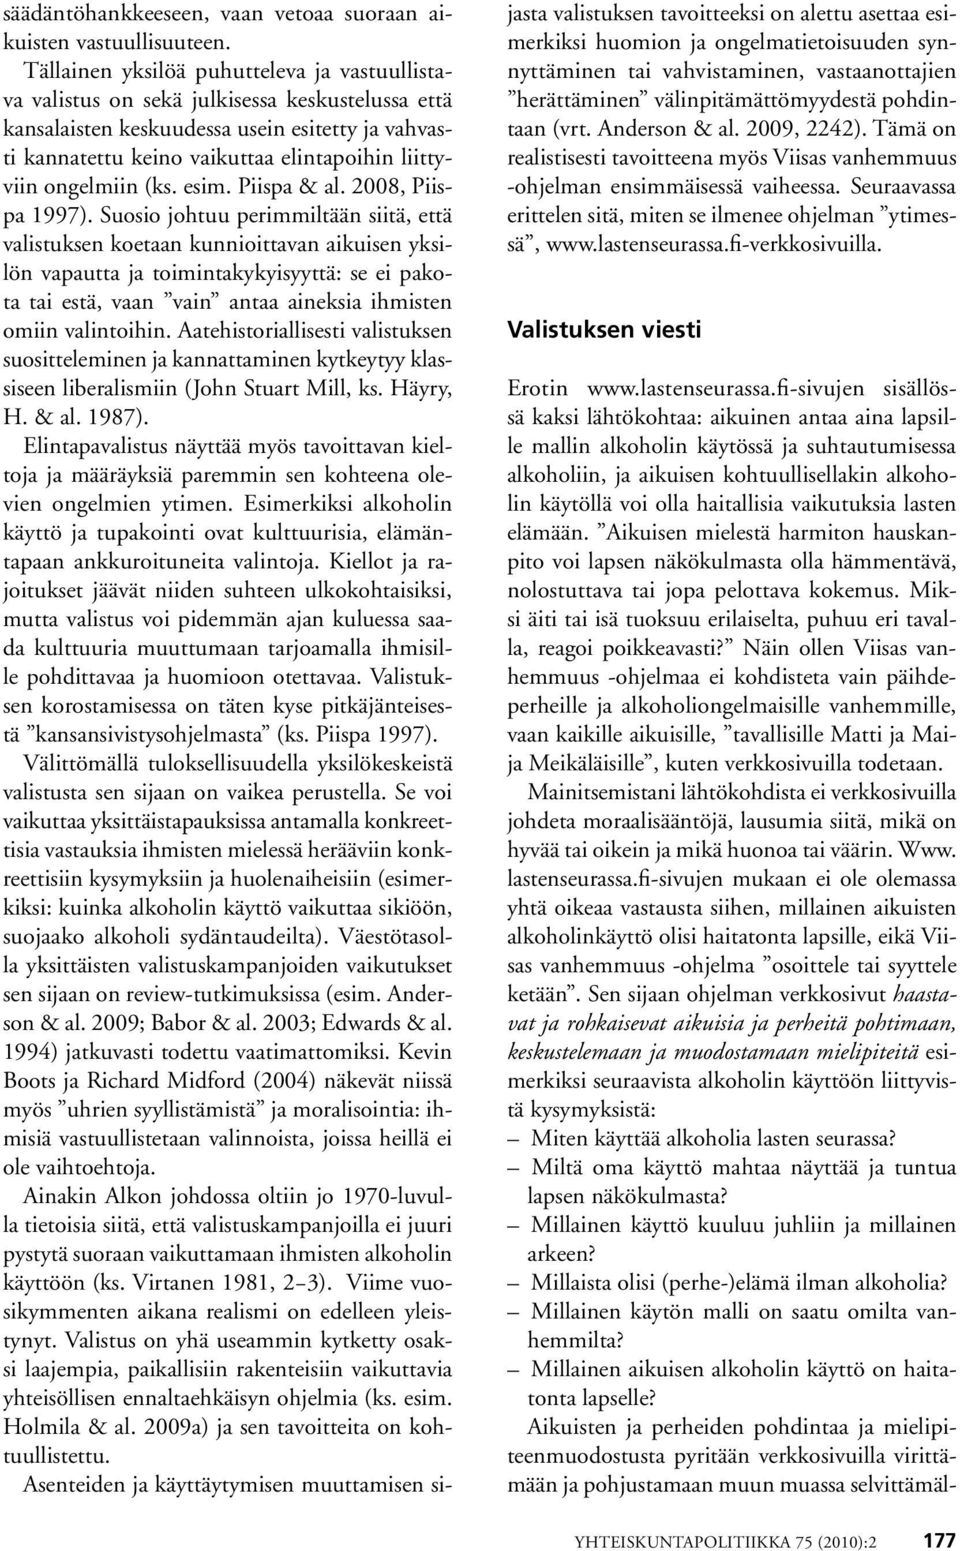 ongelmiin (ks. esim. Piispa & al. 2008, Piispa 1997).